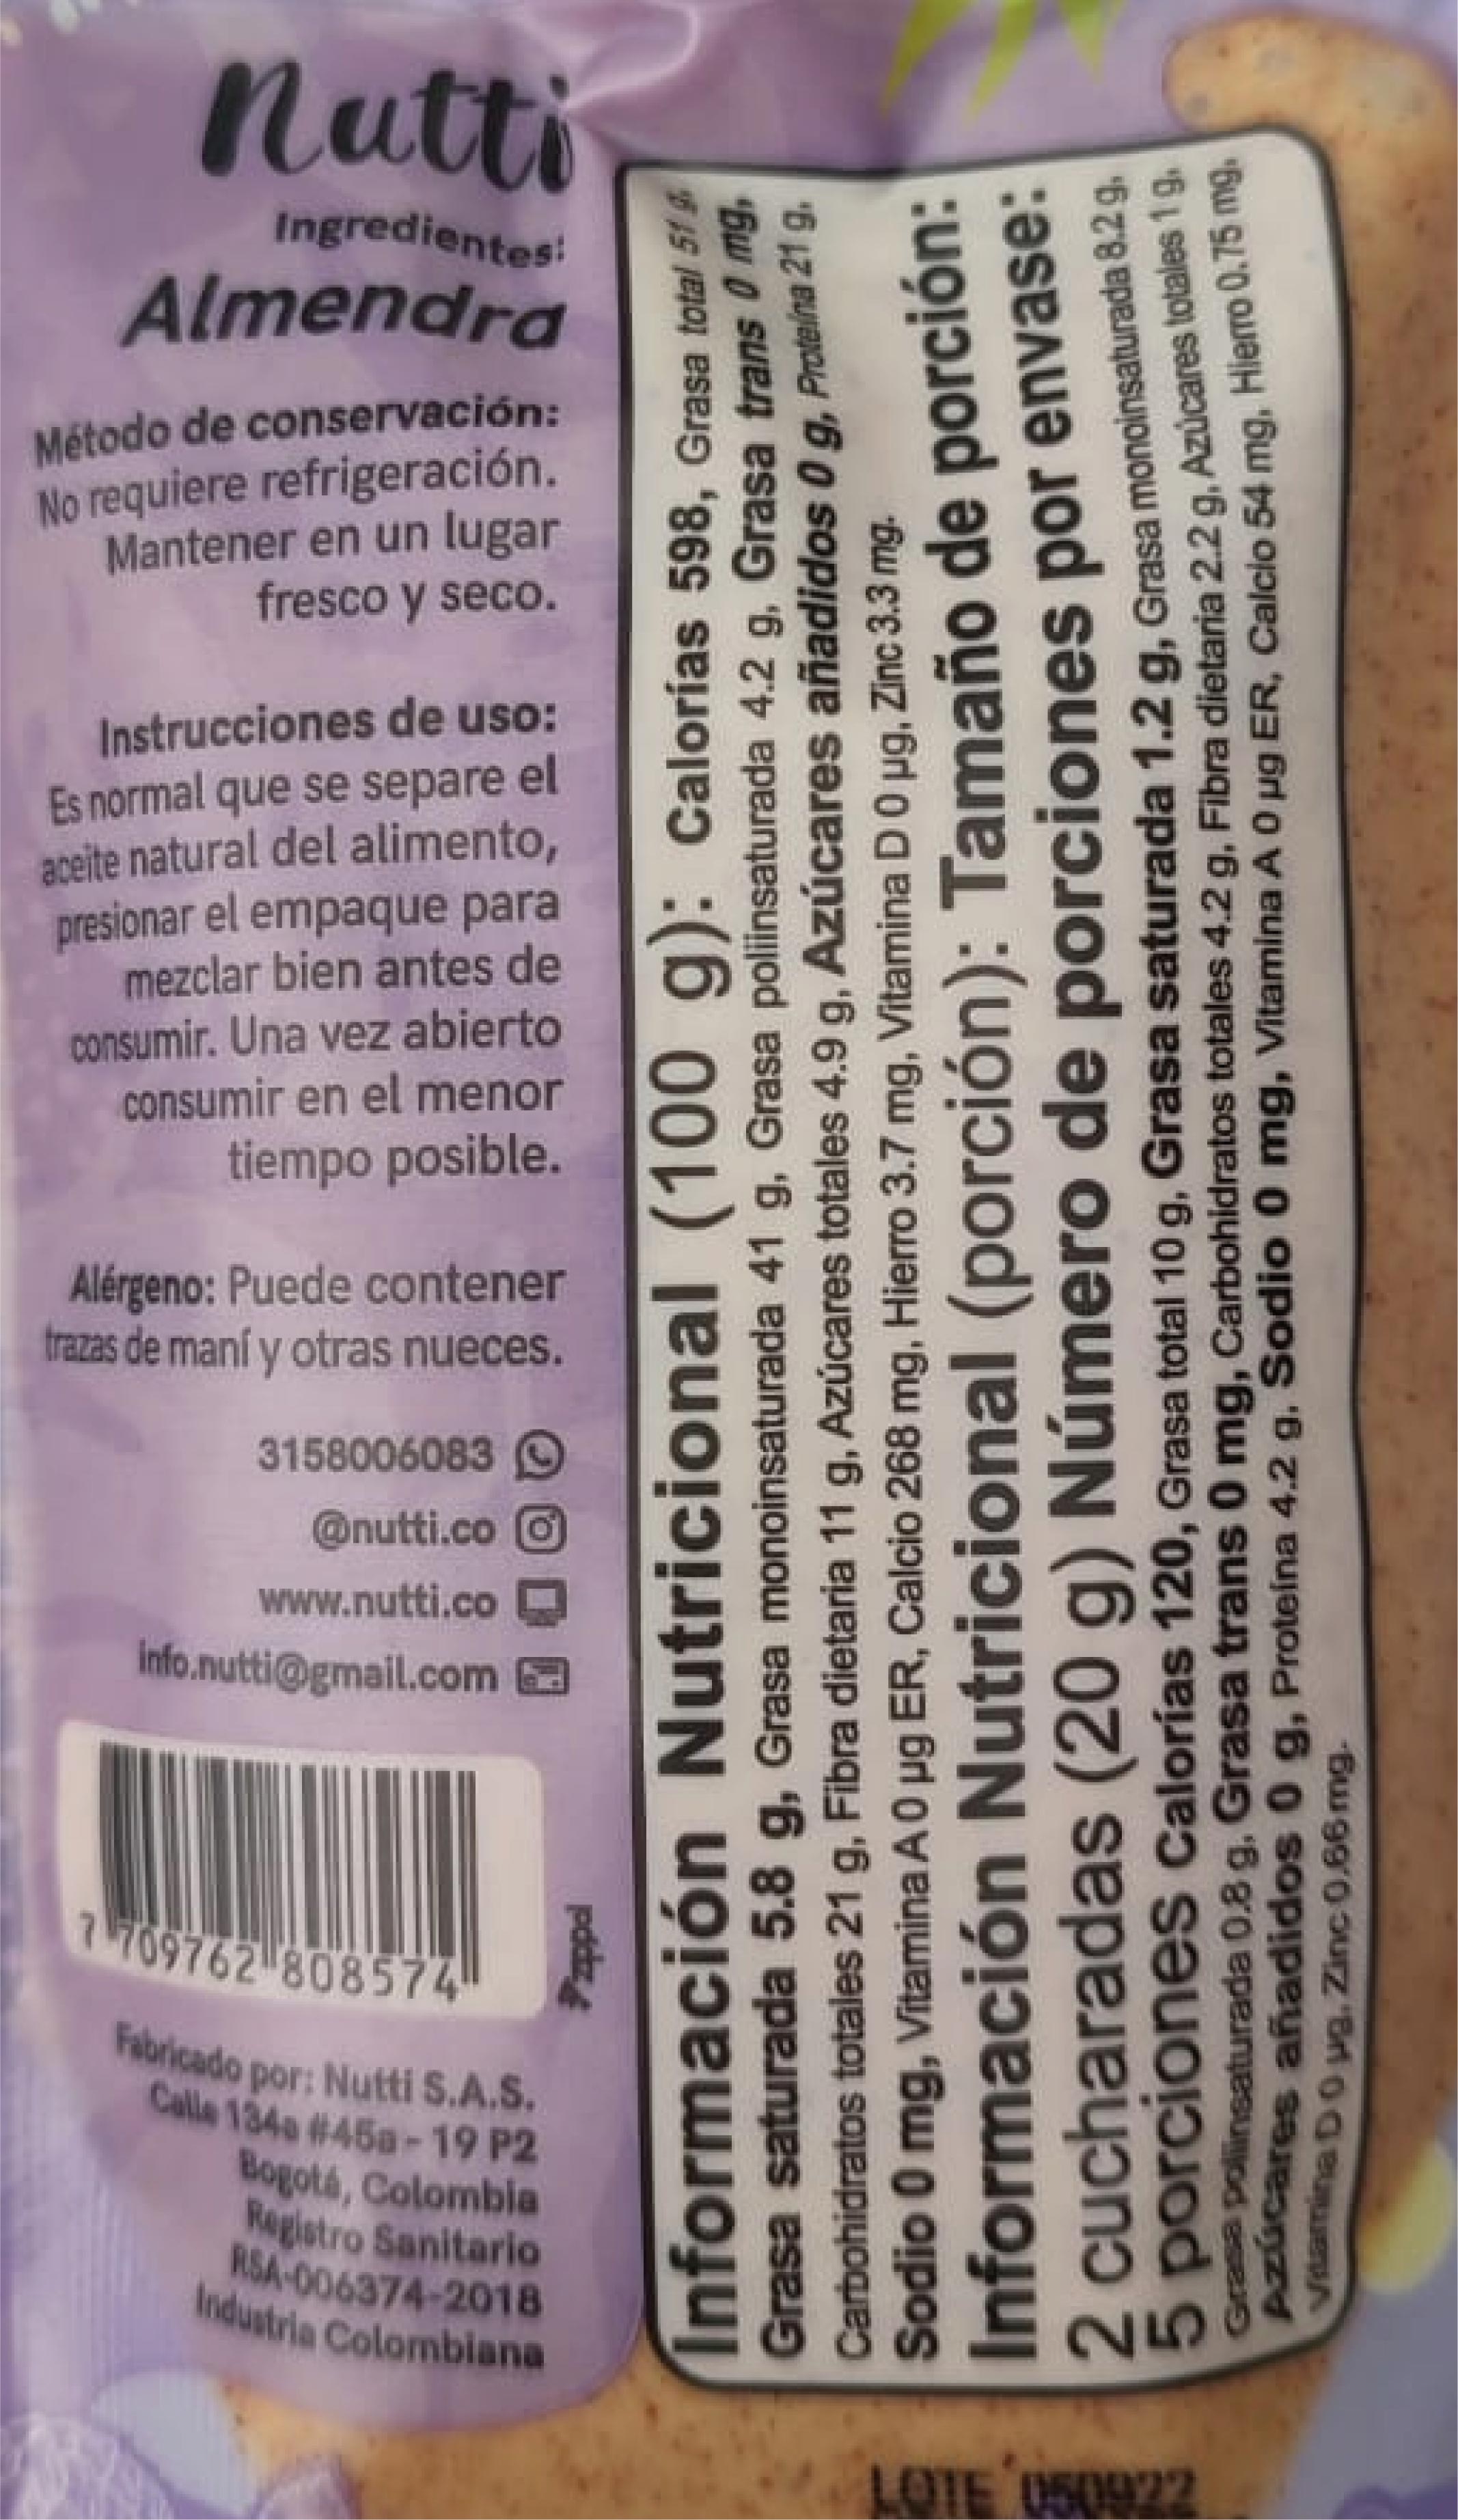 Flexible Crema de Almendra 100 gr (NUTTI)